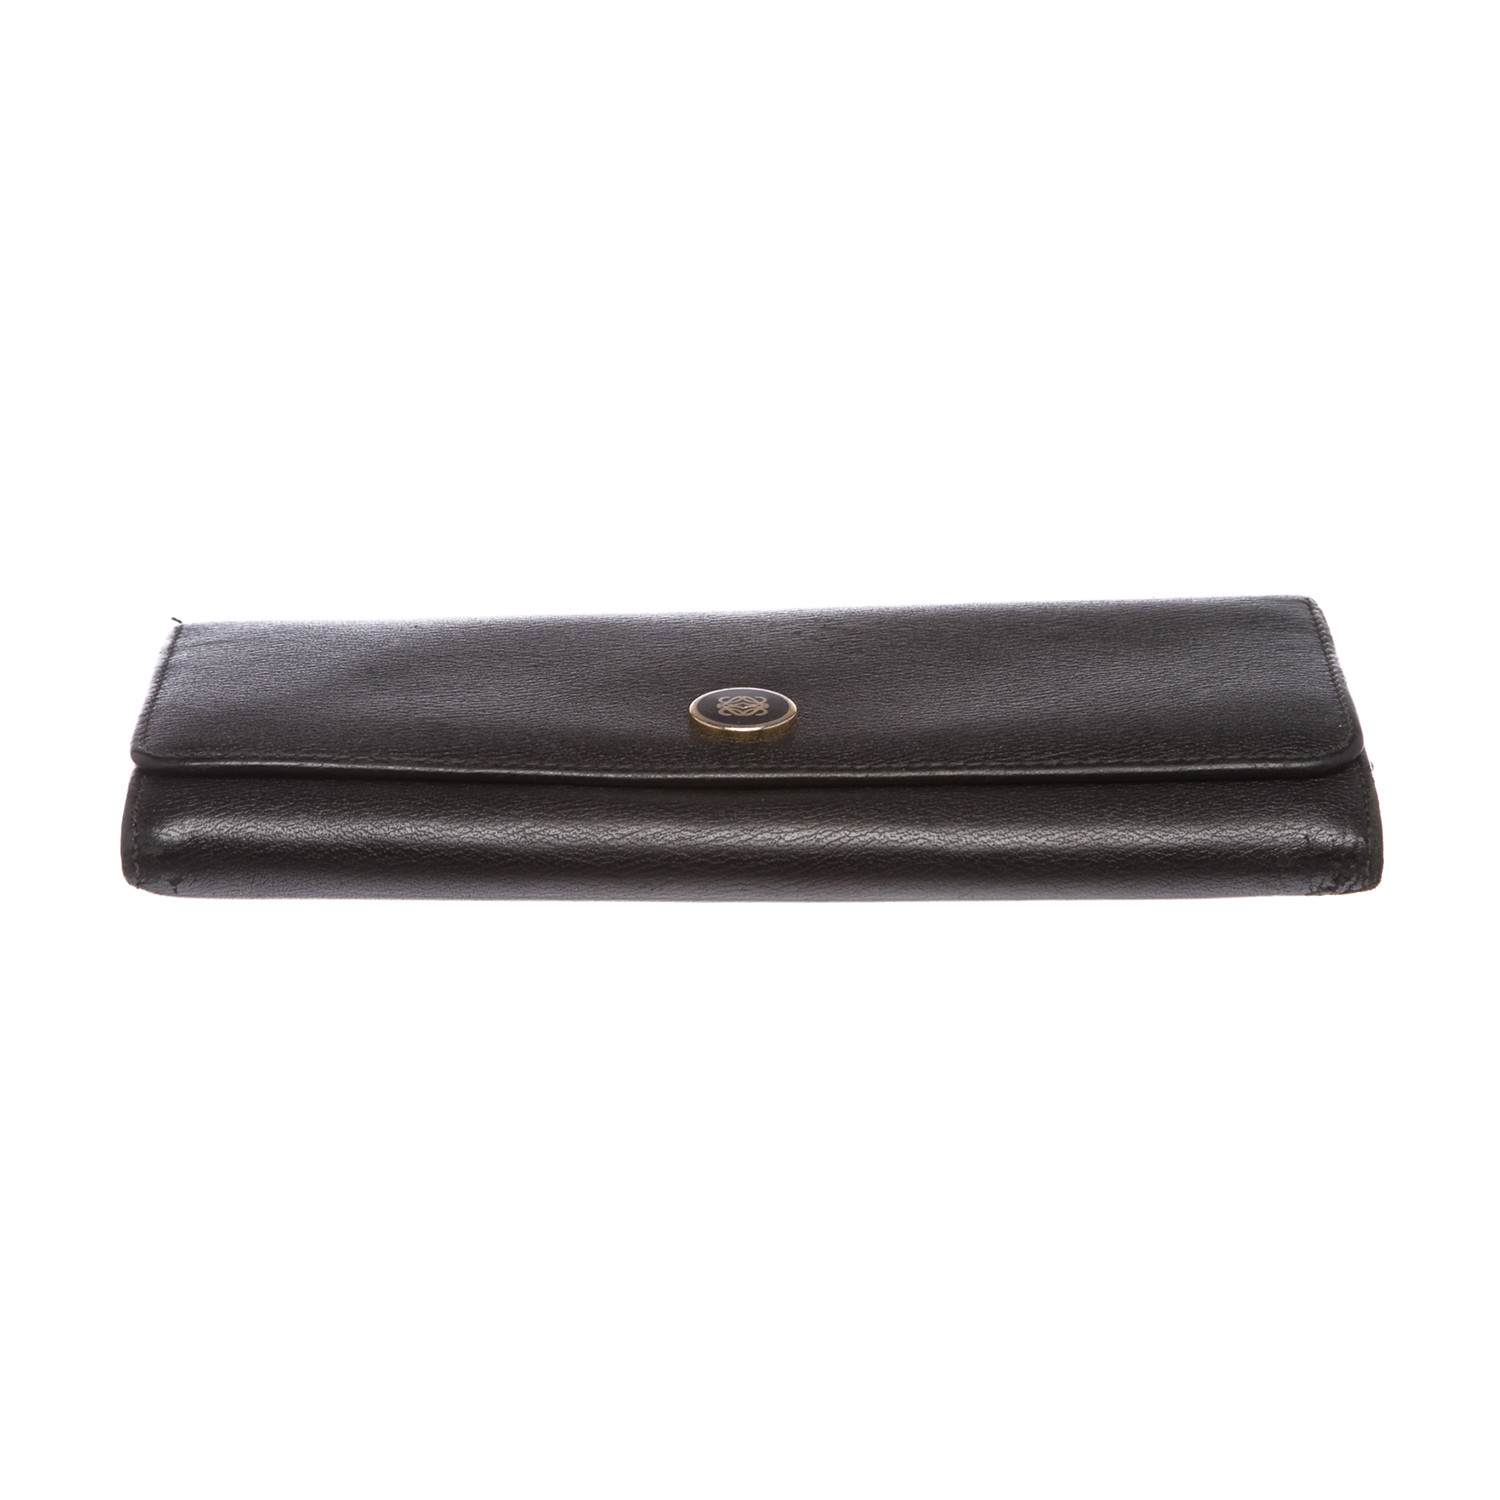 Loewe // Black Leather Long Wallet // Black // Pre-Owned - Pre-Owned ...